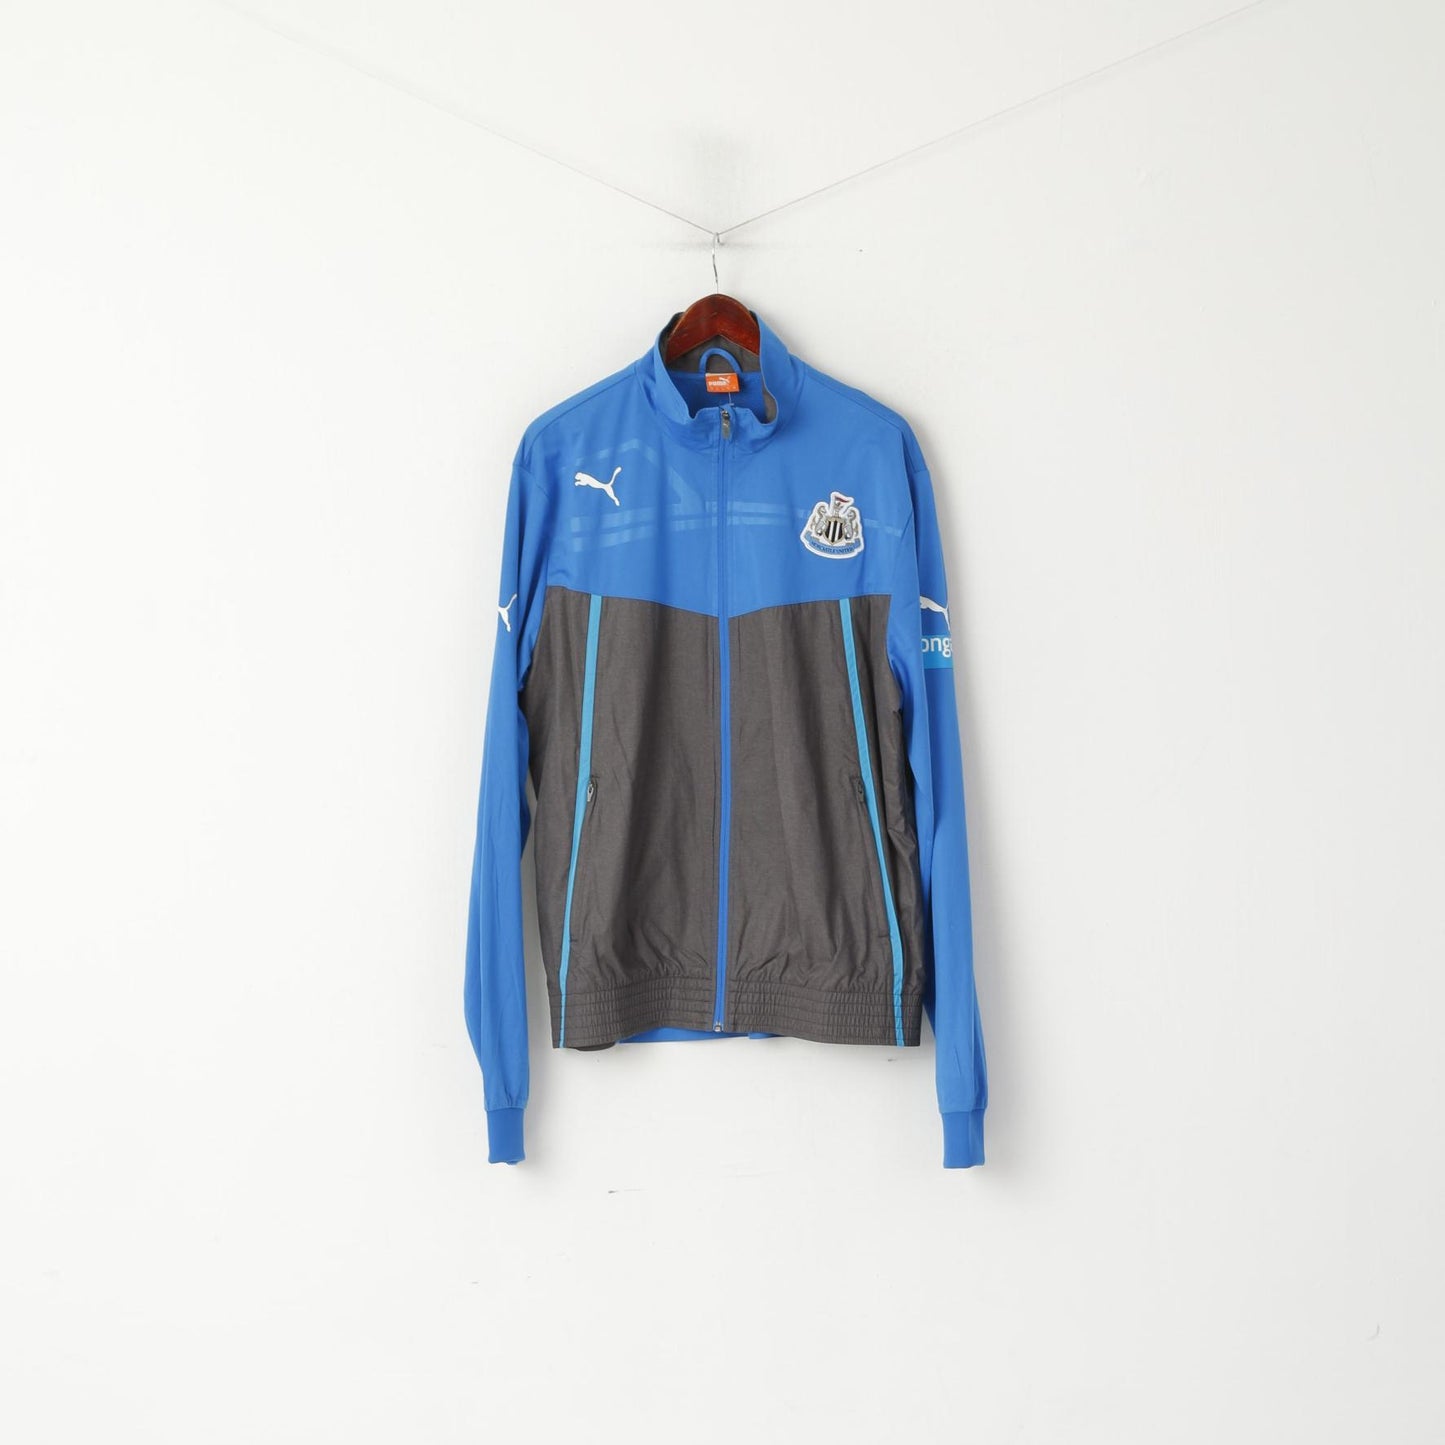 Giacca Puma da uomo XL blu Newcastle United Football Club Activewear Top con cerniera